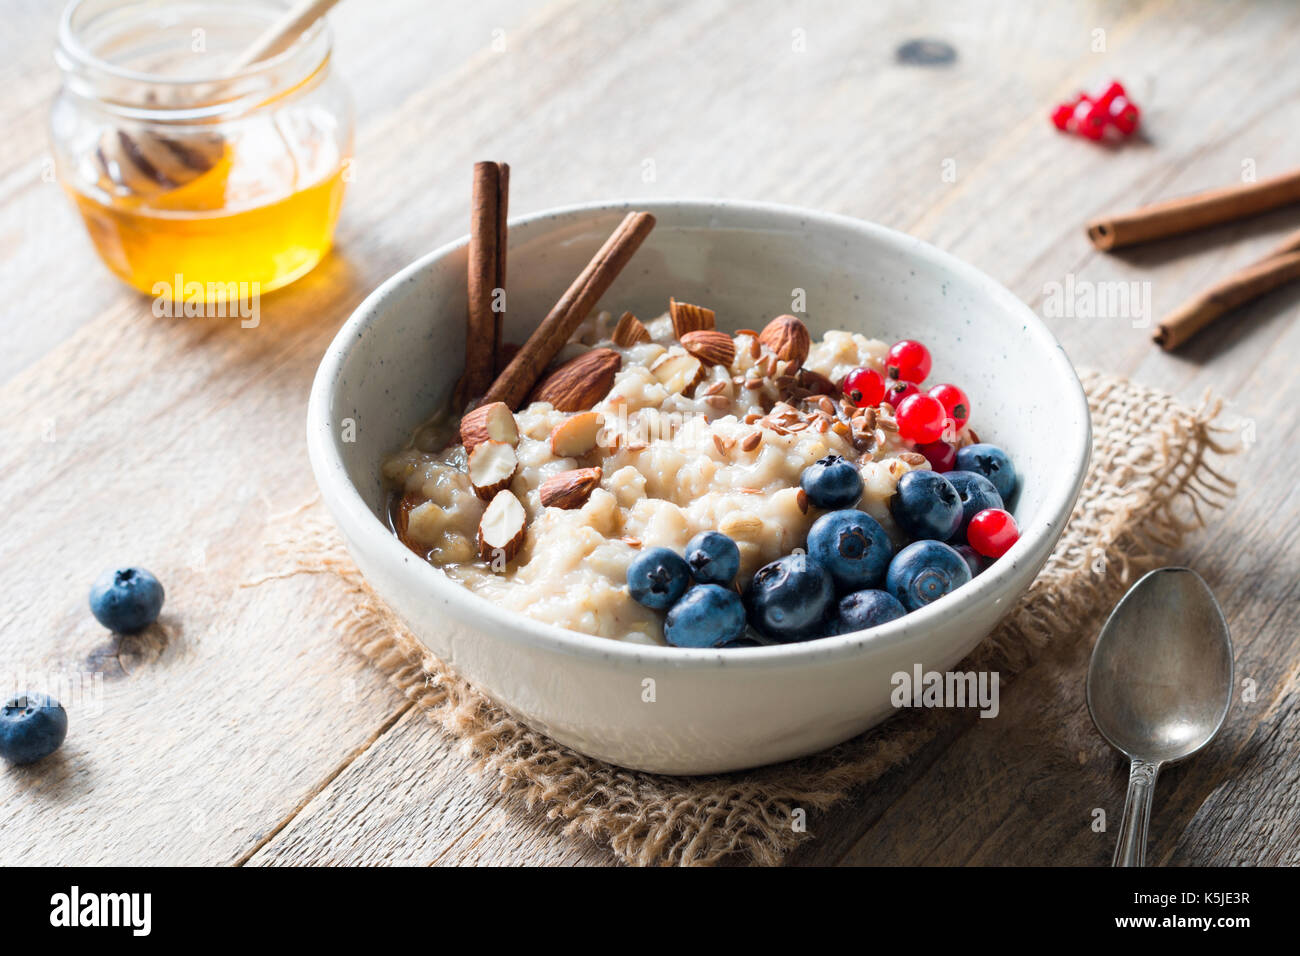 Gruau d'avoine avec des bleuets, amandes, cannelle, miel, linseeds et groseilles rouges dans un bol. super aliment pour petit-déjeuner nutritif sain Banque D'Images